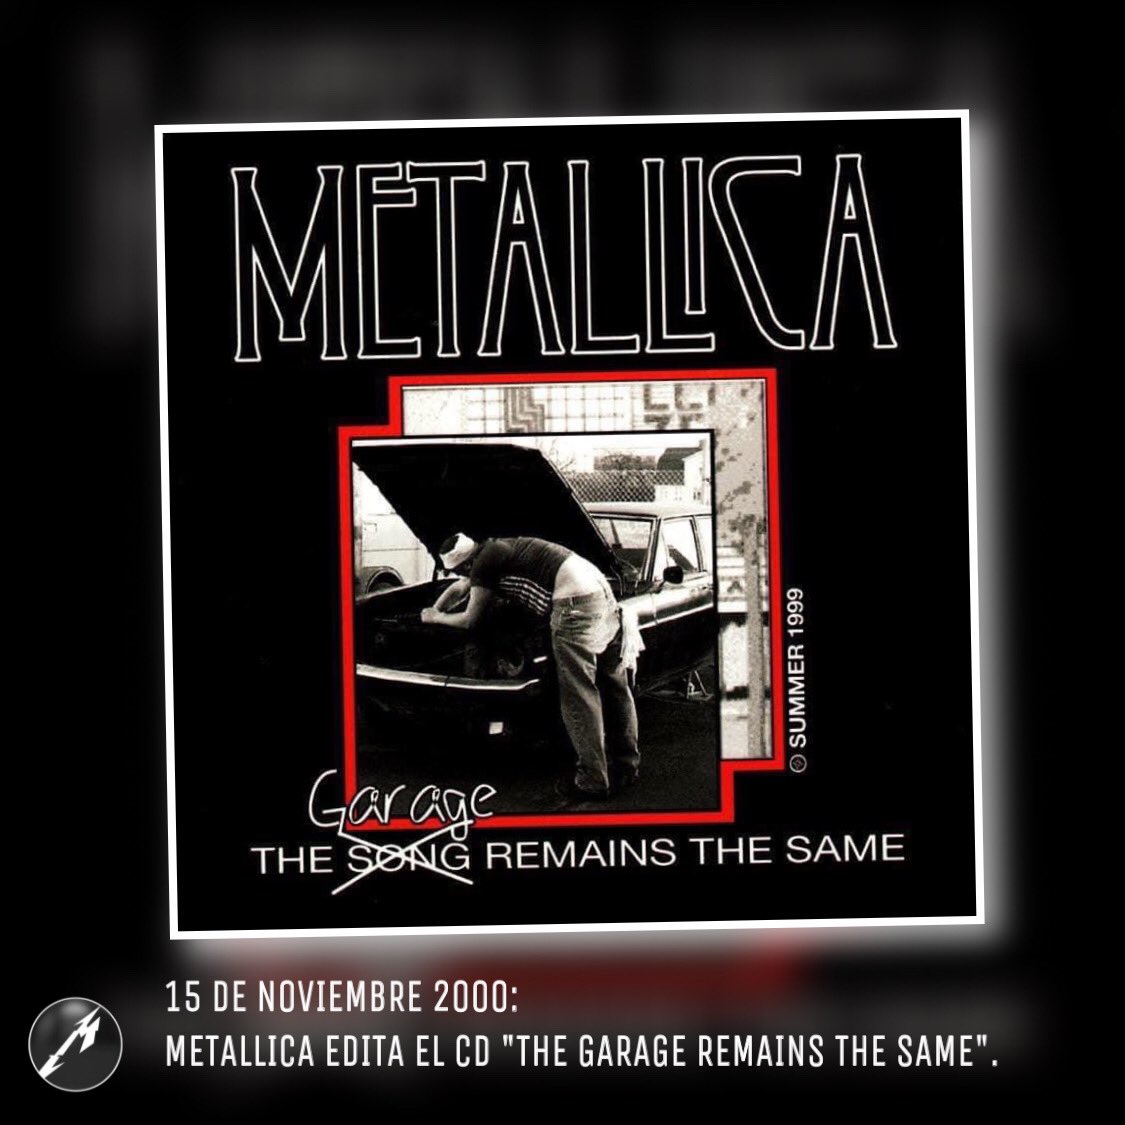 15 de Noviembre 2000 @Metallica lanza oficialmente el CD Edición Limitada “The Garage Remains the Same” que contiene canciones de su show en la Pista Atlética del Estadio Nacional de Santiago de Chile 12 de Mayo 1999.
#Metallica #TheGarageRemainsTheSame #METALLICAMetalUpYourAss